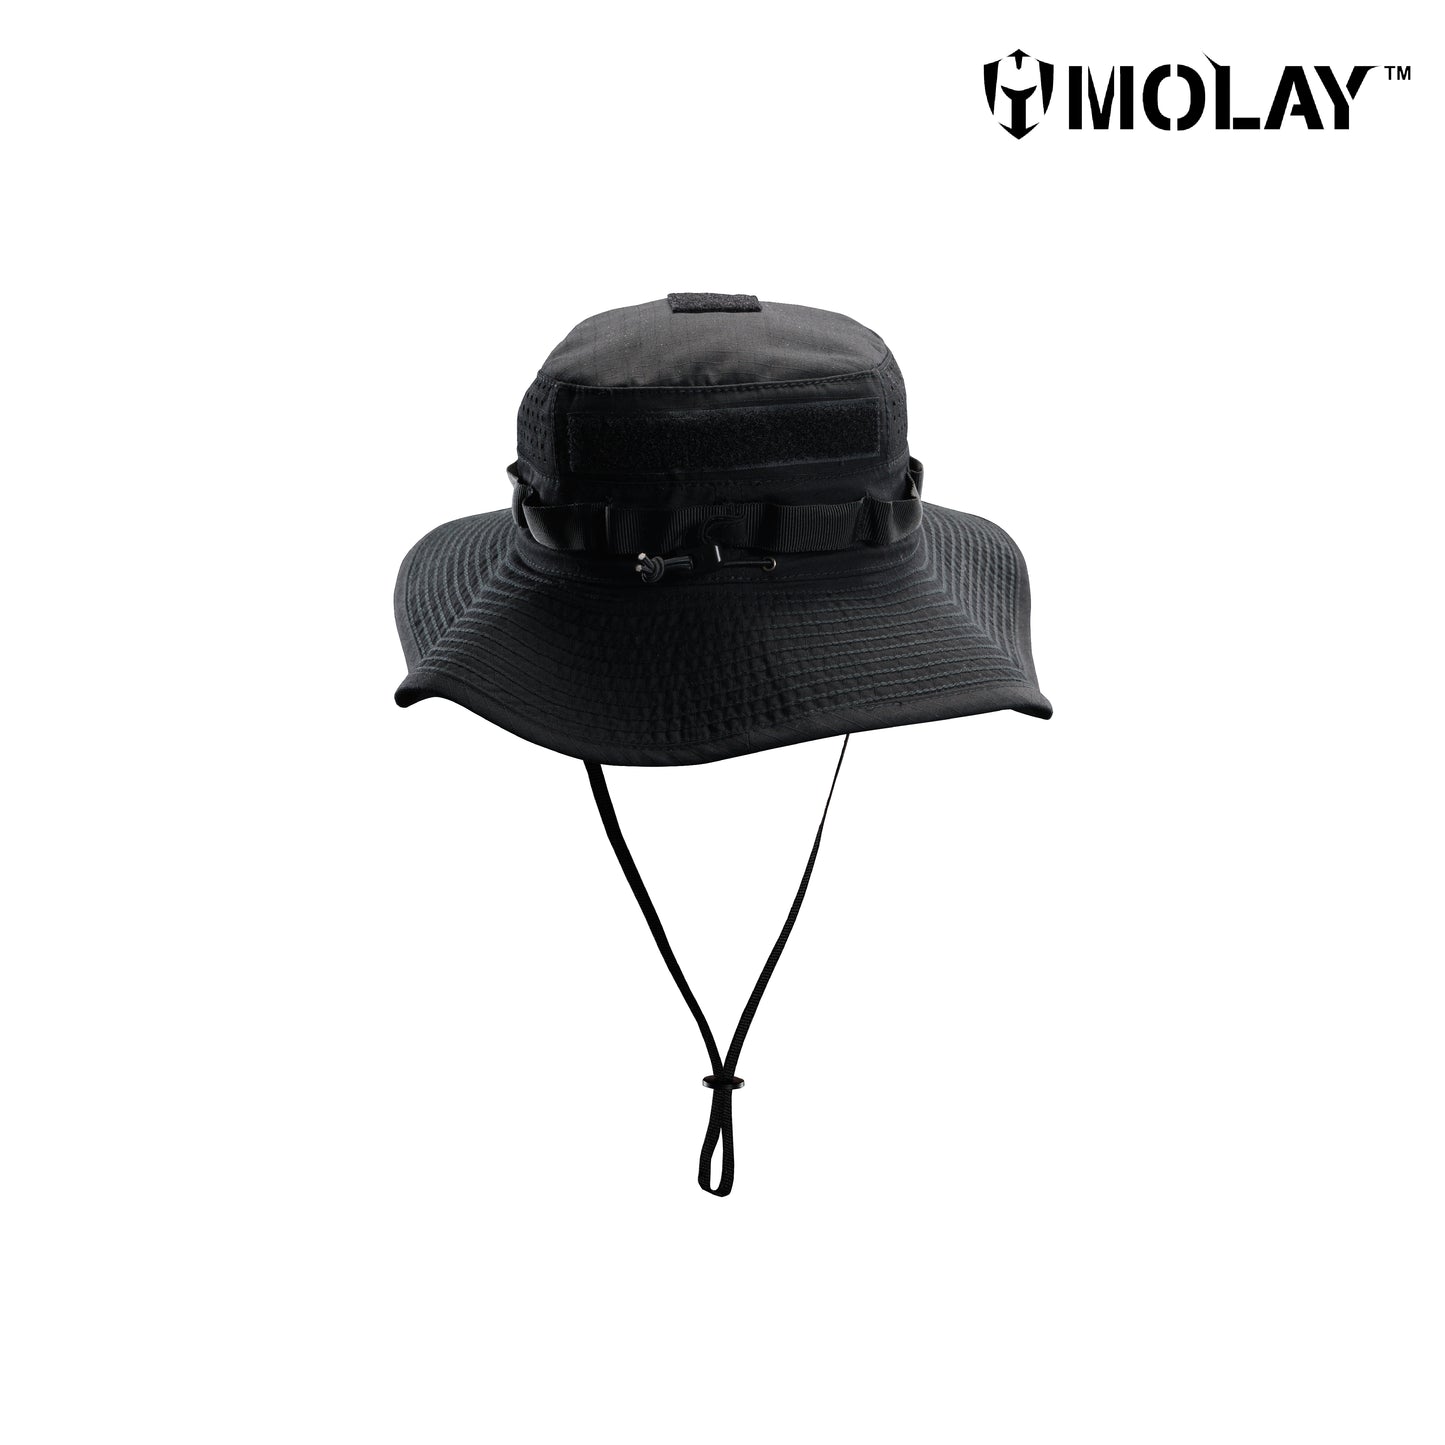 Molay® Tango Boonie Hat MK. II